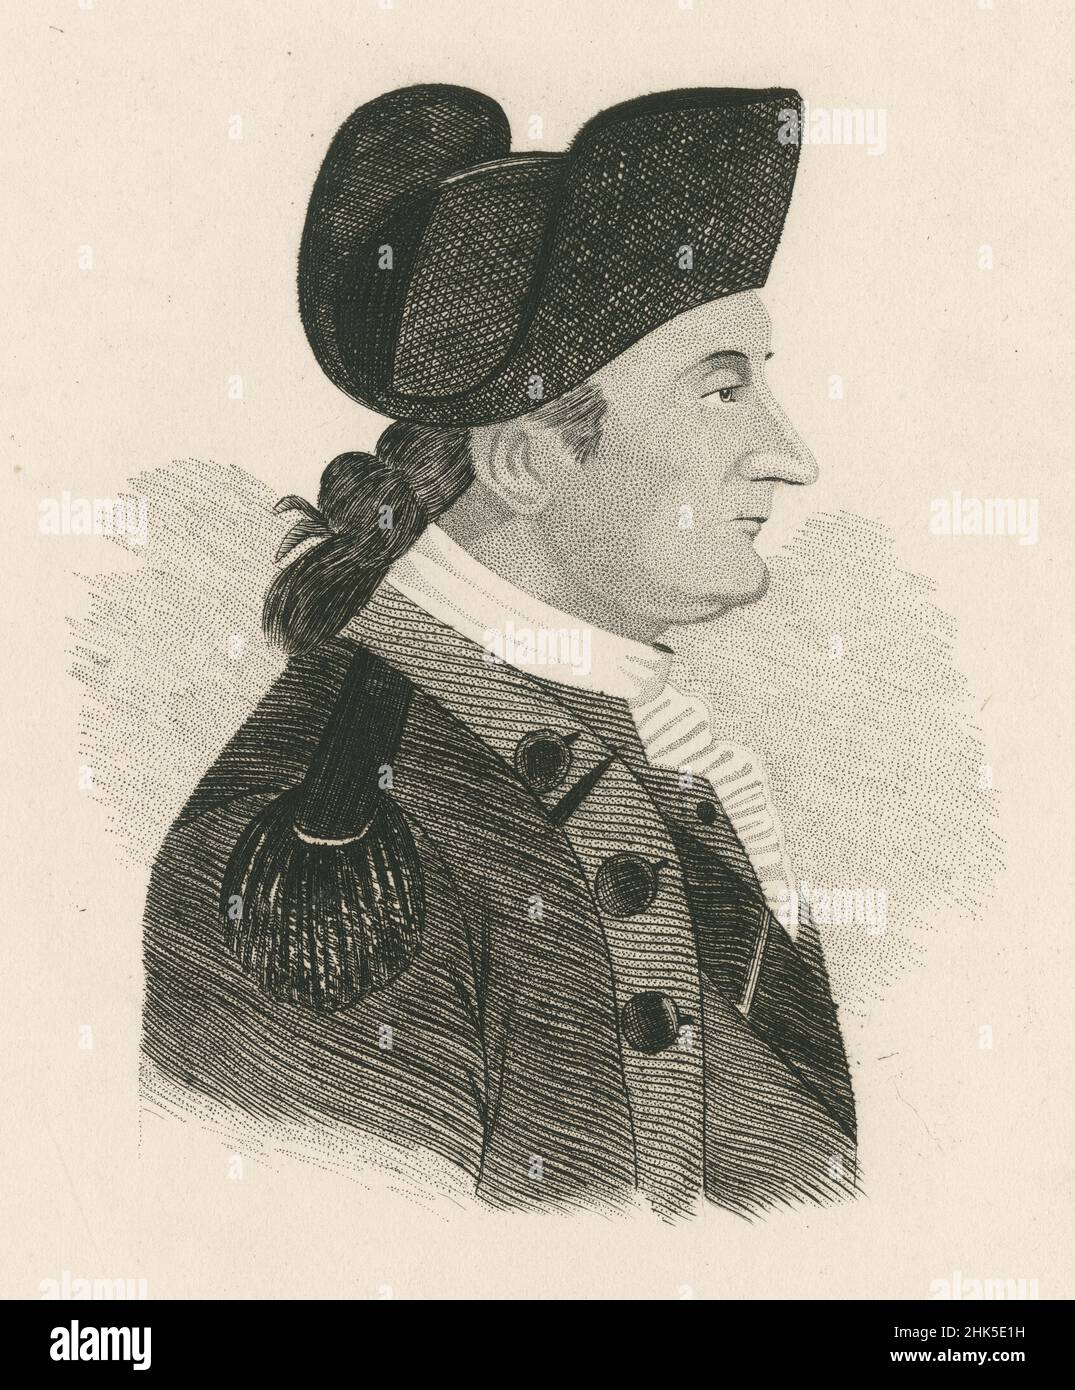 Grabado antiguo de Enoc Poor alrededor de 1850. Enoc Poor (1736-1780) fue un general de brigada en el Ejército Continental durante la Guerra Revolucionaria Americana. FUENTE: GRABADO ORIGINAL Foto de stock